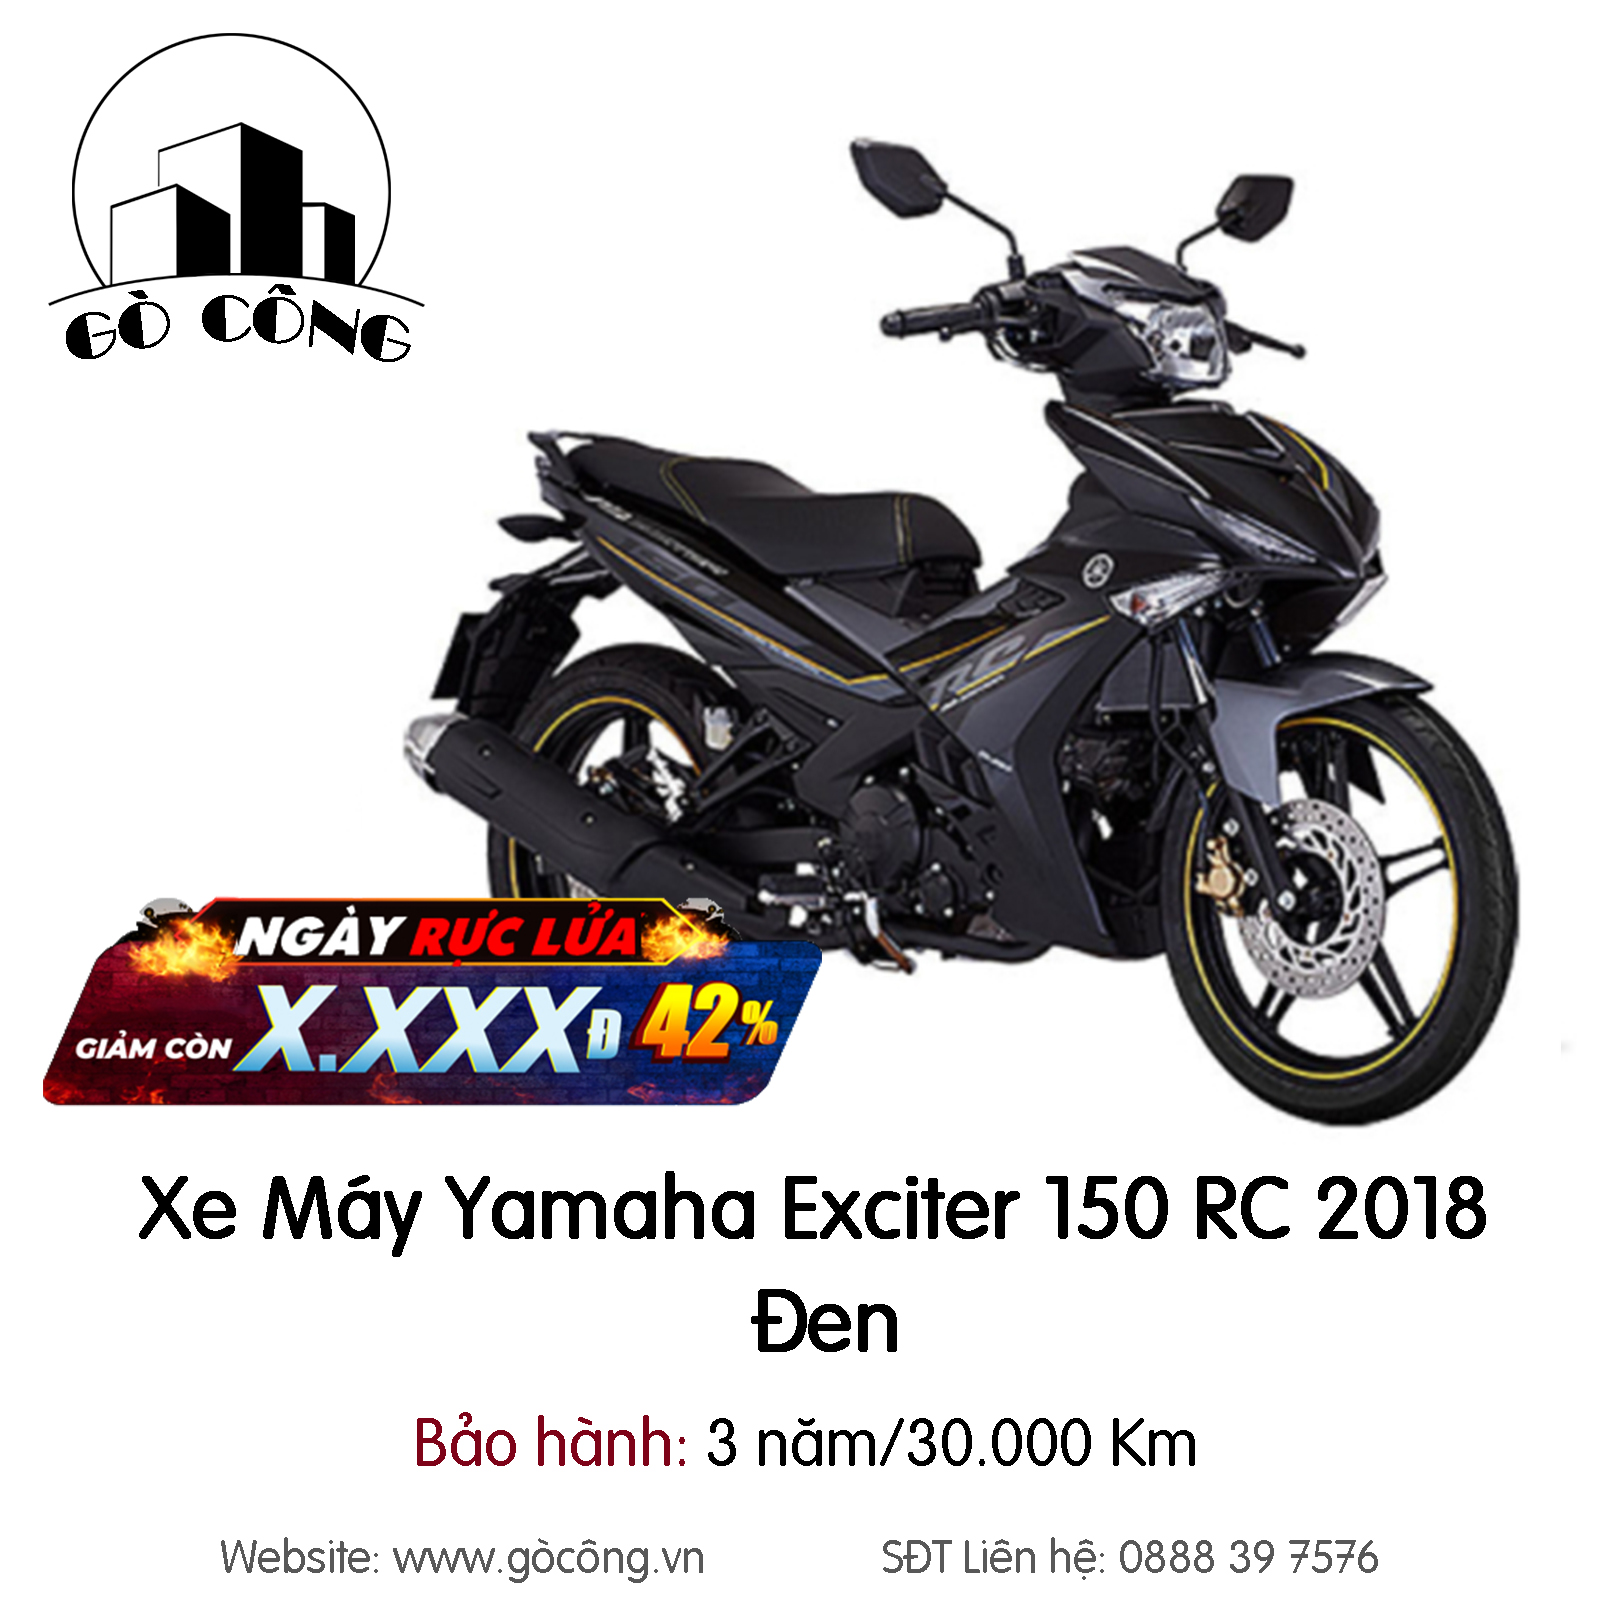 Yamaha Exciter RC 150 giá 4699 triệu được trang bị những gì   Xe máy   Việt Giải Trí